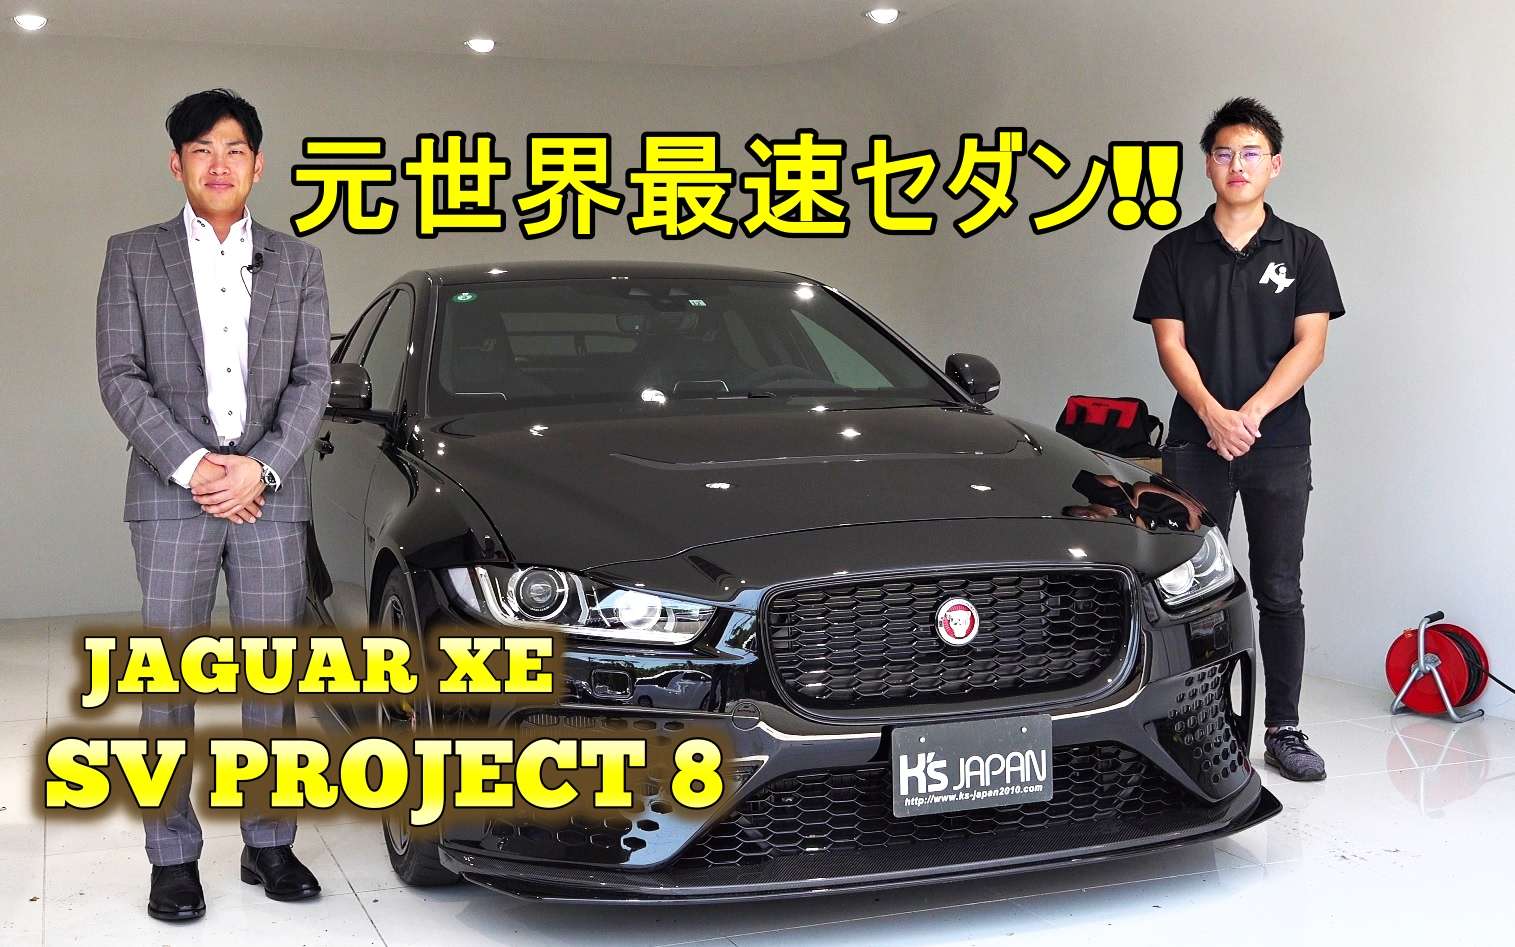 神戸市垂水区の外車買取専門店 K S Japan ジャガーxe Svプロジェクト8 試乗インプレッション 元世界最速セダン スタッフの日常や輸入 車の豆知識などを掲載しています 外車の買取実績が豊富なk S Japan